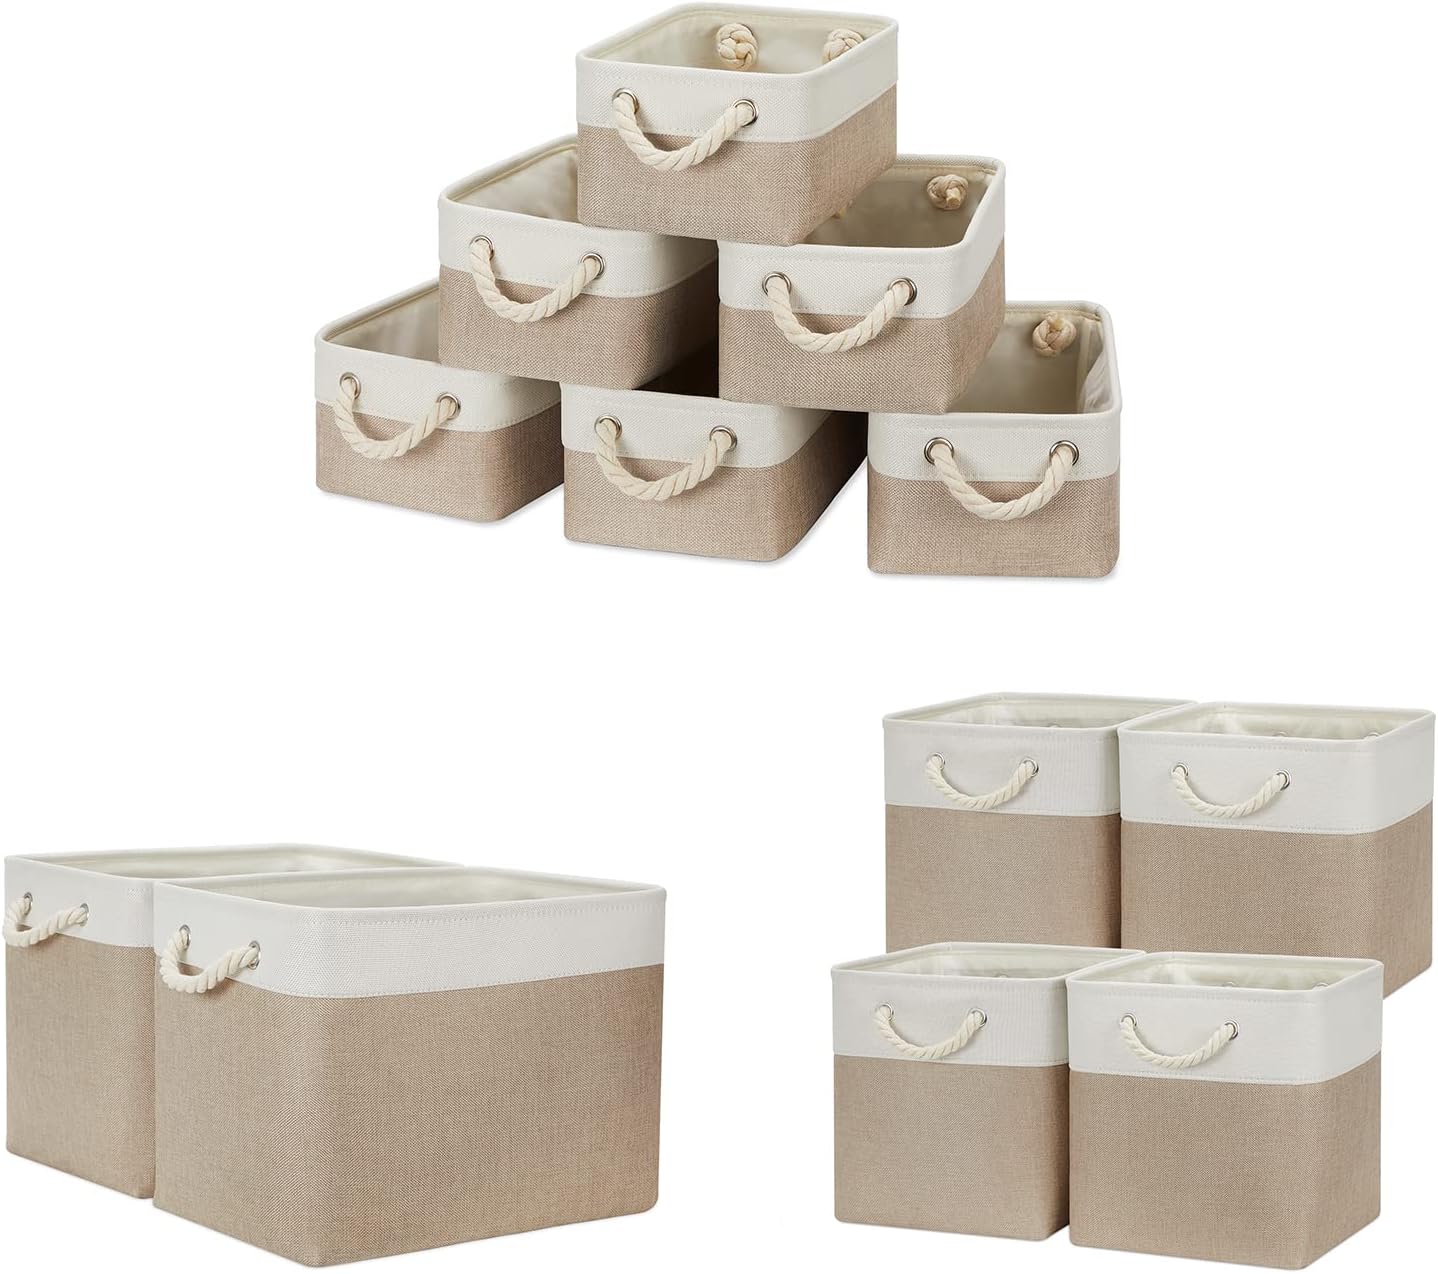 Temary Fabric Storage Baskets Small Storage Bins Decorative Baskets for Storage (White&Khaki, 6Pack-11.8Lx7.9Wx5.3H, 2Pack-16Lx12Wx12H, 4Pack-12Lx12Wx12H)